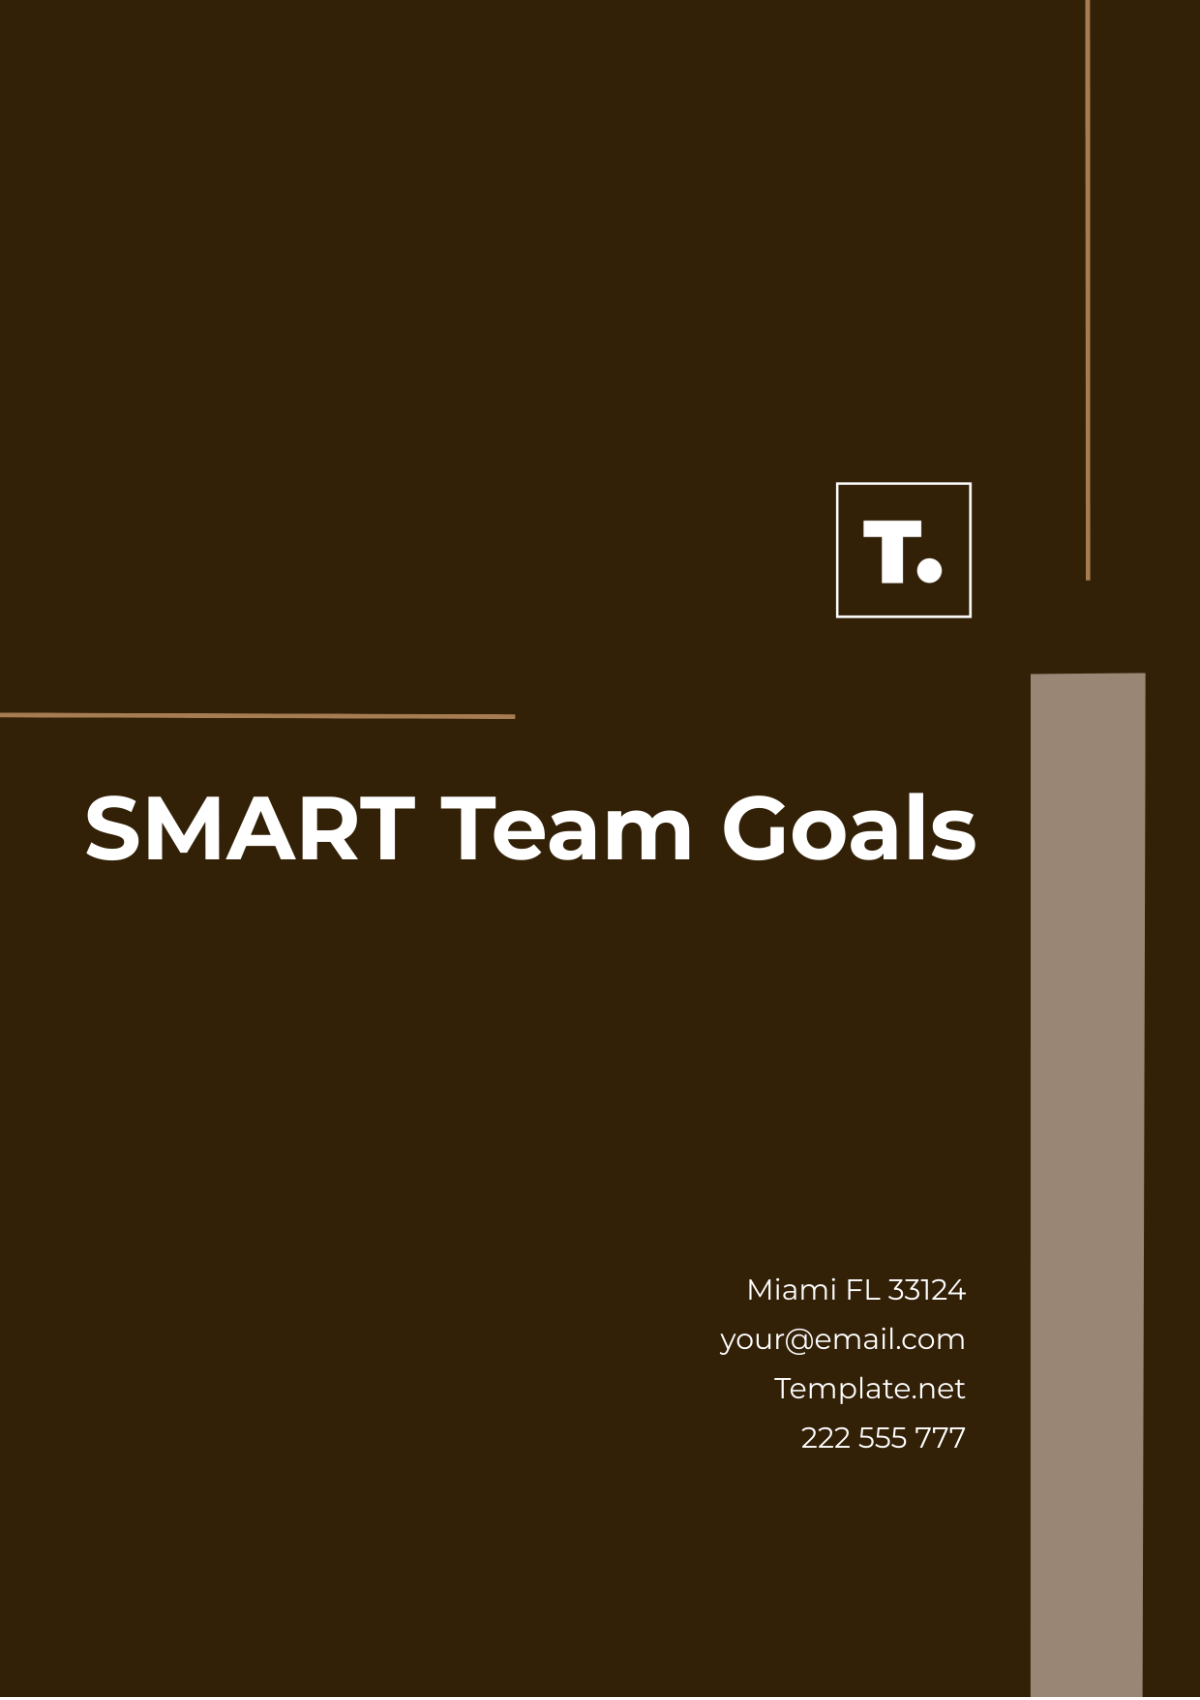 SMART Team Goals Template